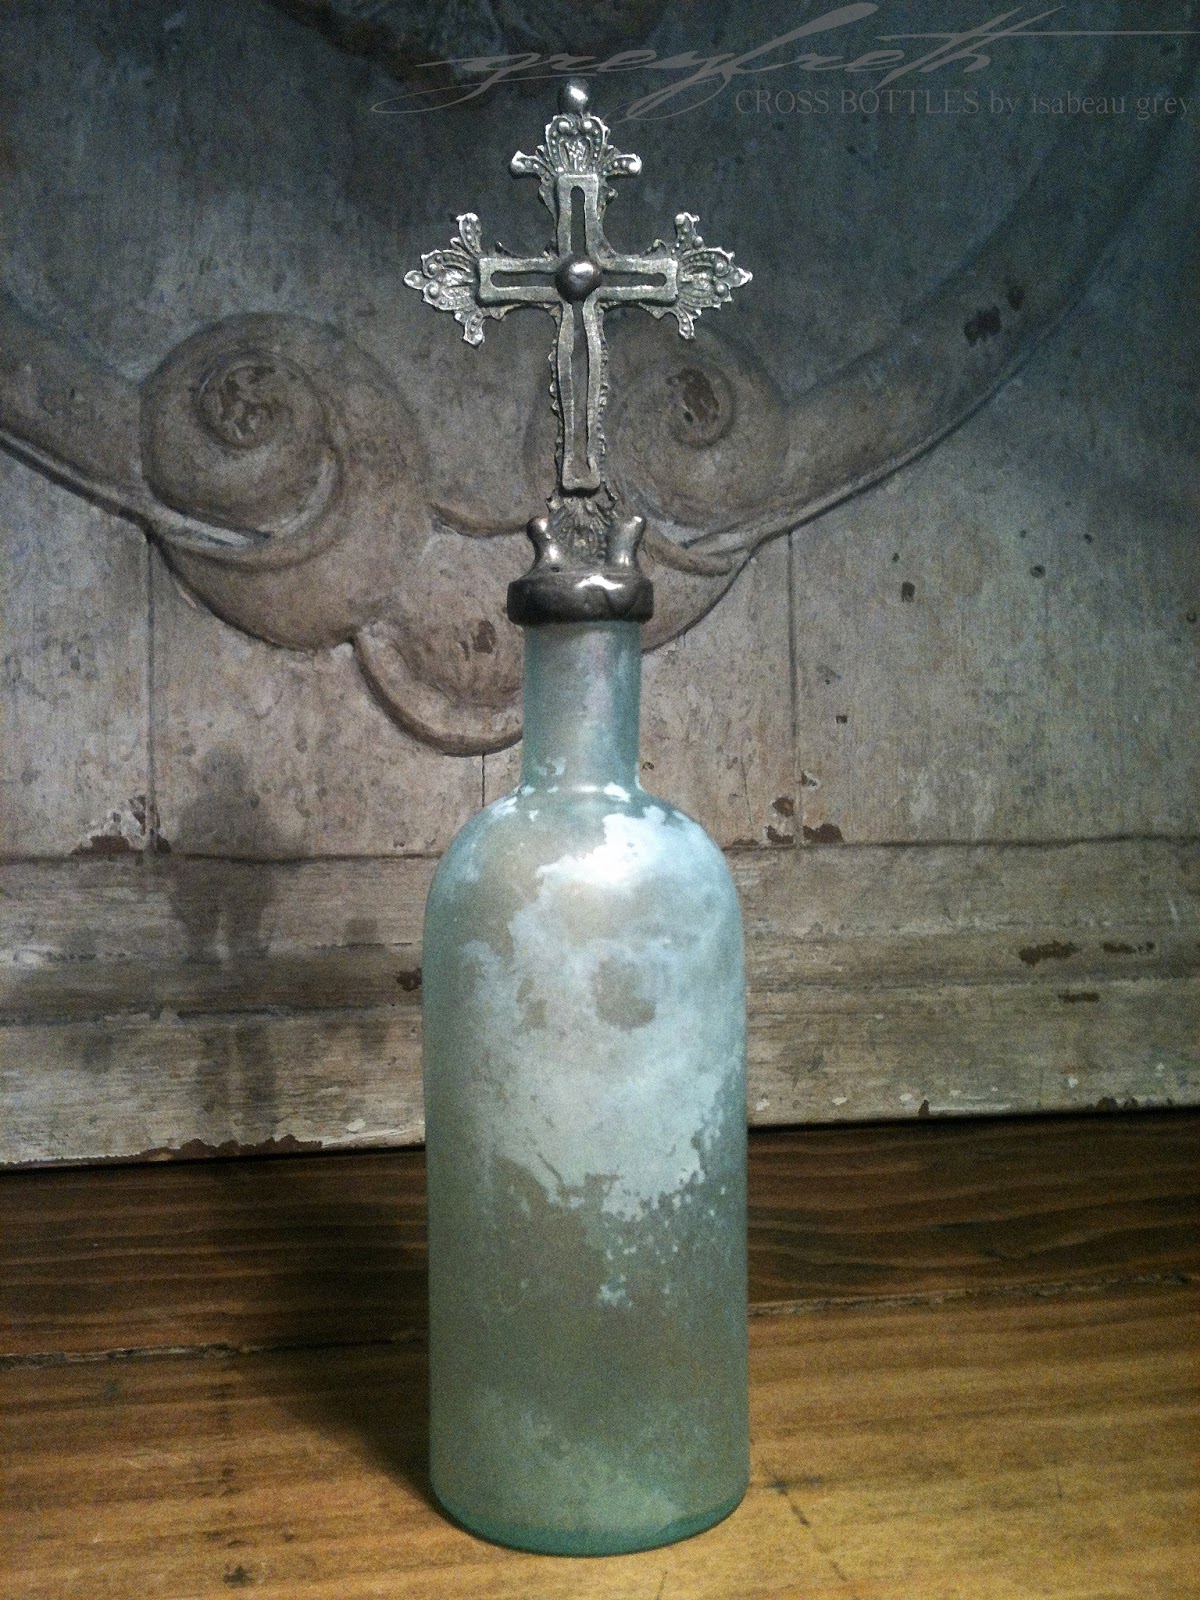 Vintage Blue Cross Bottles: GREYFRETH CROSS BOTTLES -- Pretty in Aqua